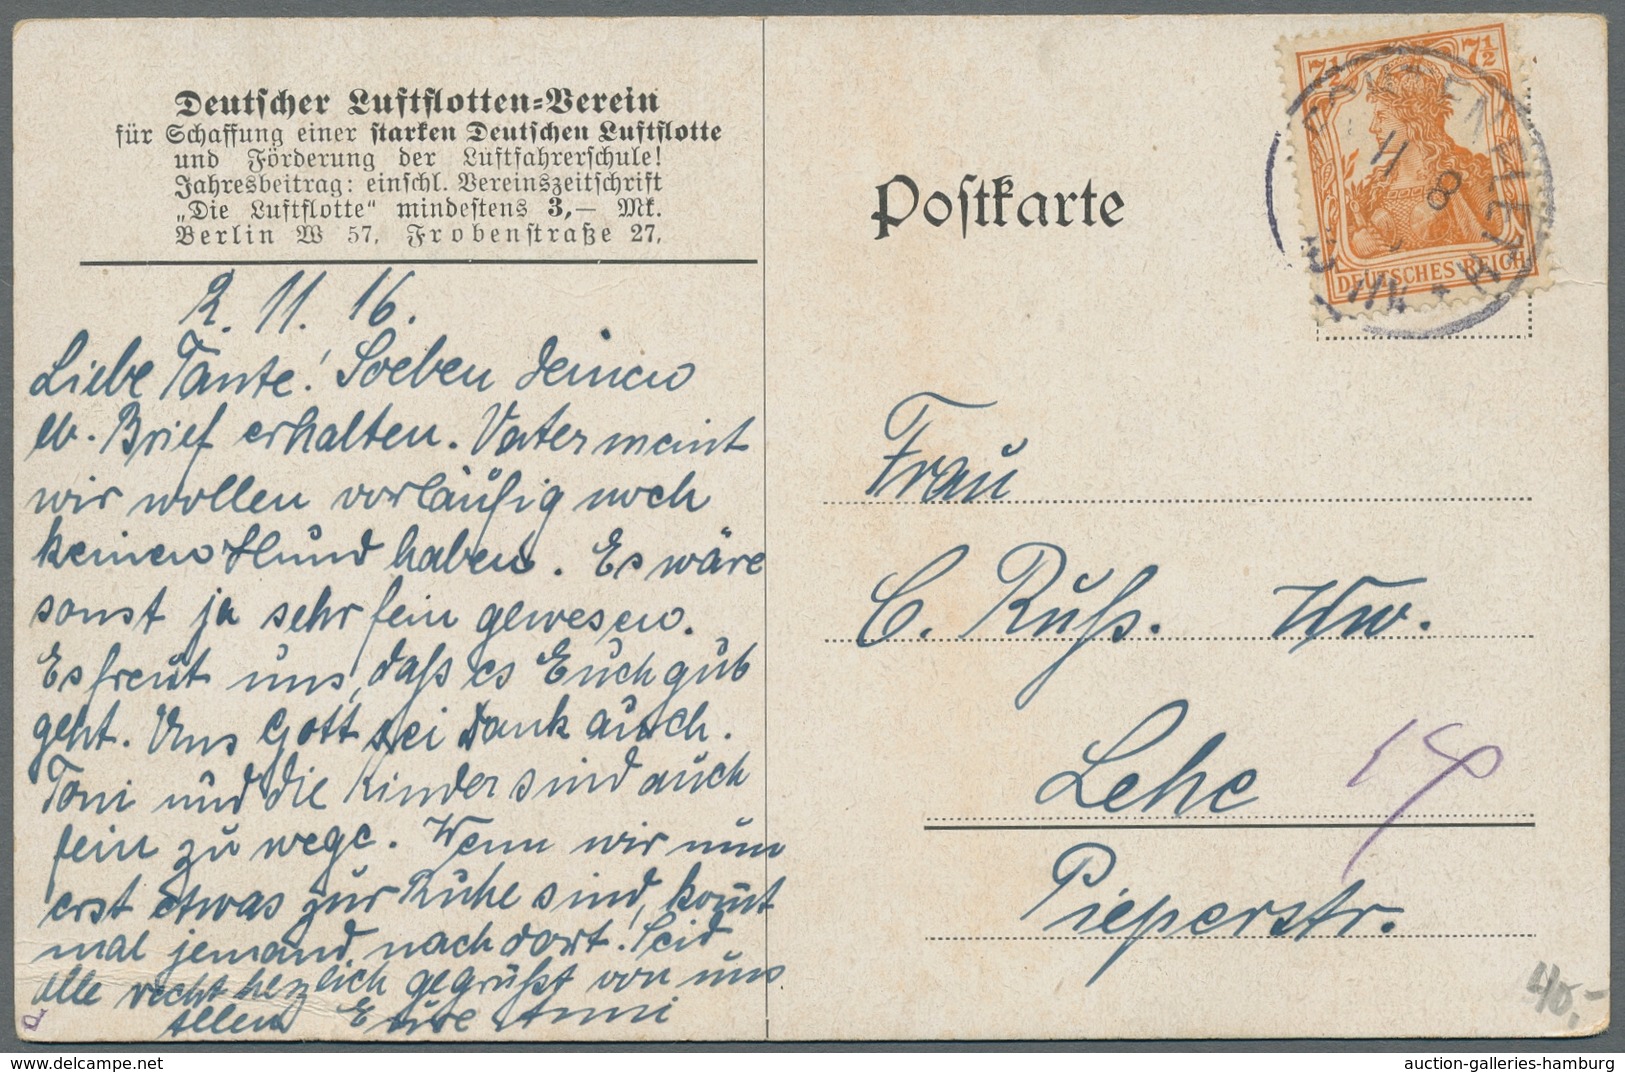 Flugpost Deutschland: 1912-1916, Partie von 10 verschiedenen ungebrauchten Ansichtskarten und einer